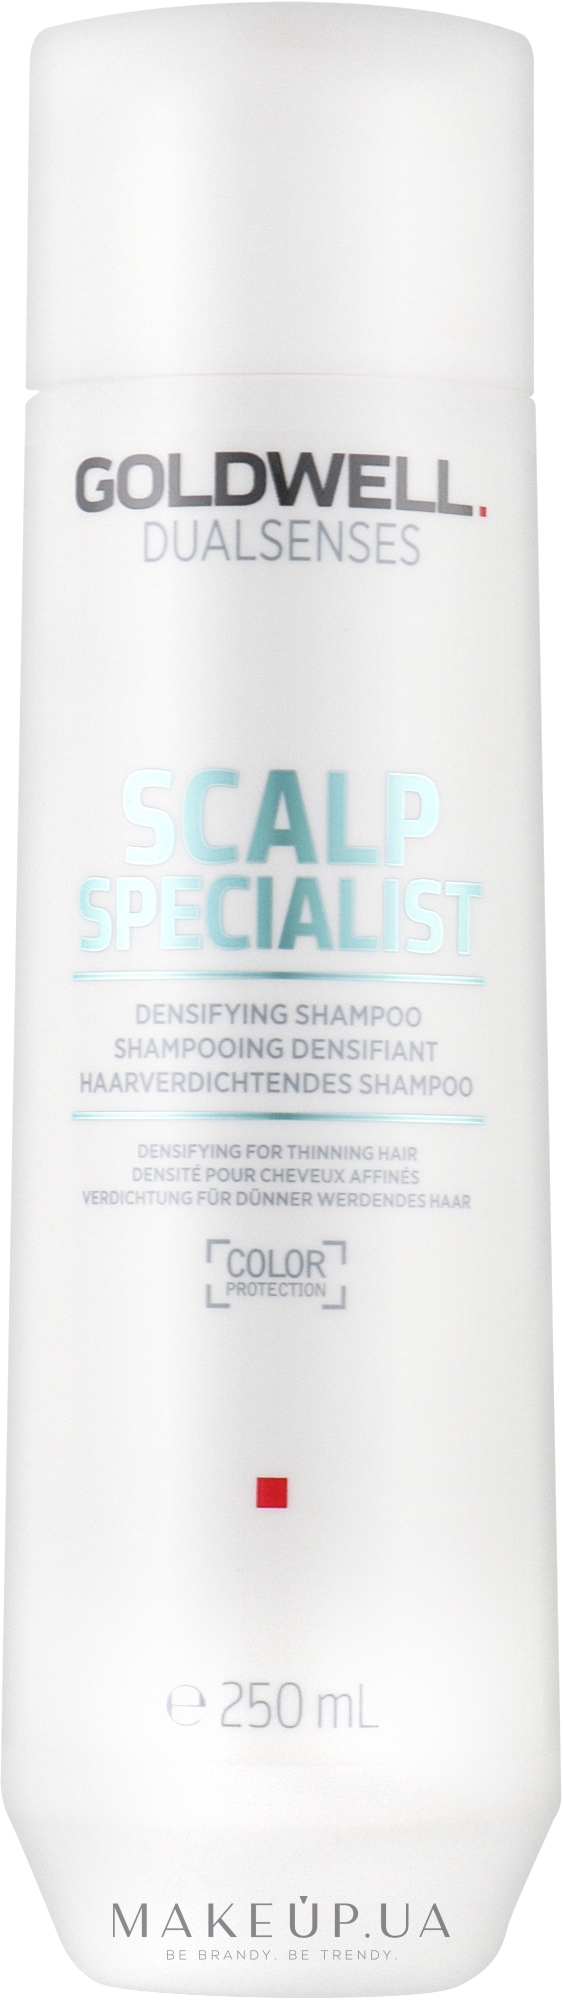 Зміцнювальний шампунь для тонкого волосся - Goldwell Dualsenses Scalp Specialist Densifying Shampoo — фото 250ml